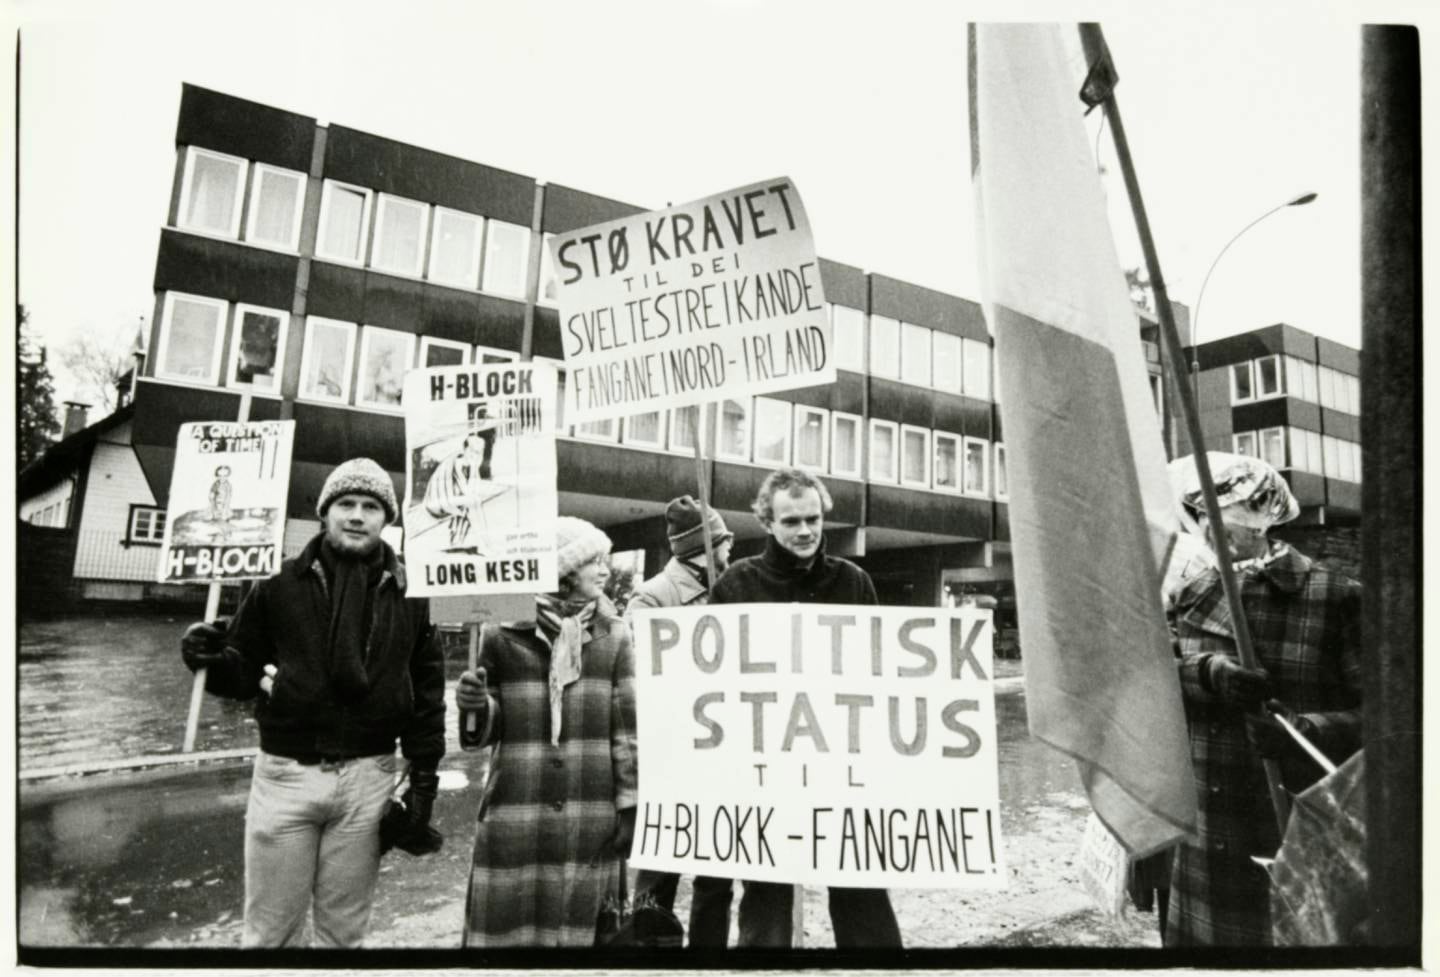 Demonstranter fra H-blokkaksjonen, Irlandsfronten og Irlandskomiteen med plakater til støtte for de sultestreikende nord-irske fangenes krav om politisk status.